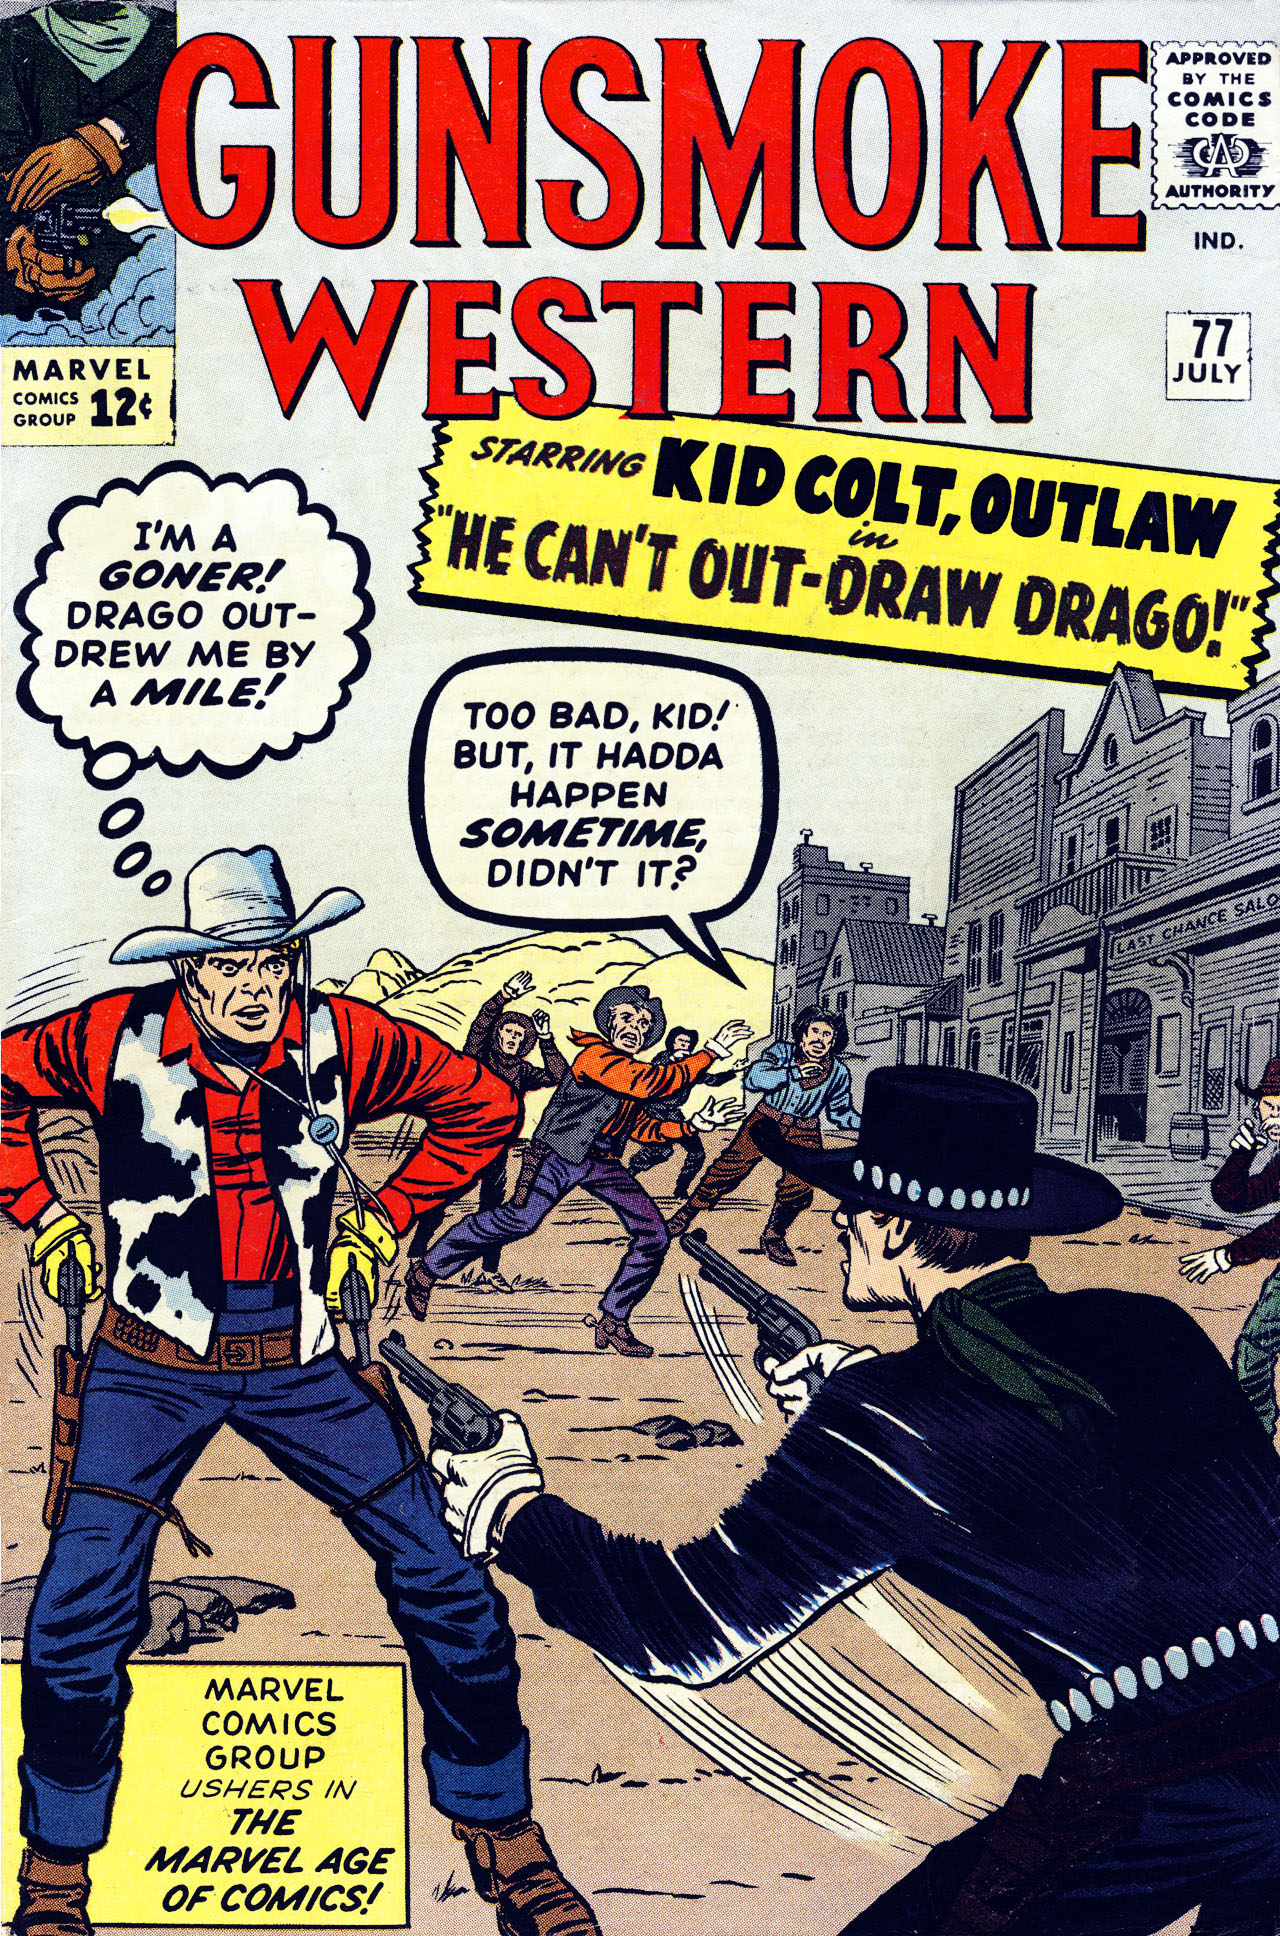 Read online Gunsmoke Western comic -  Issue #77 - 1